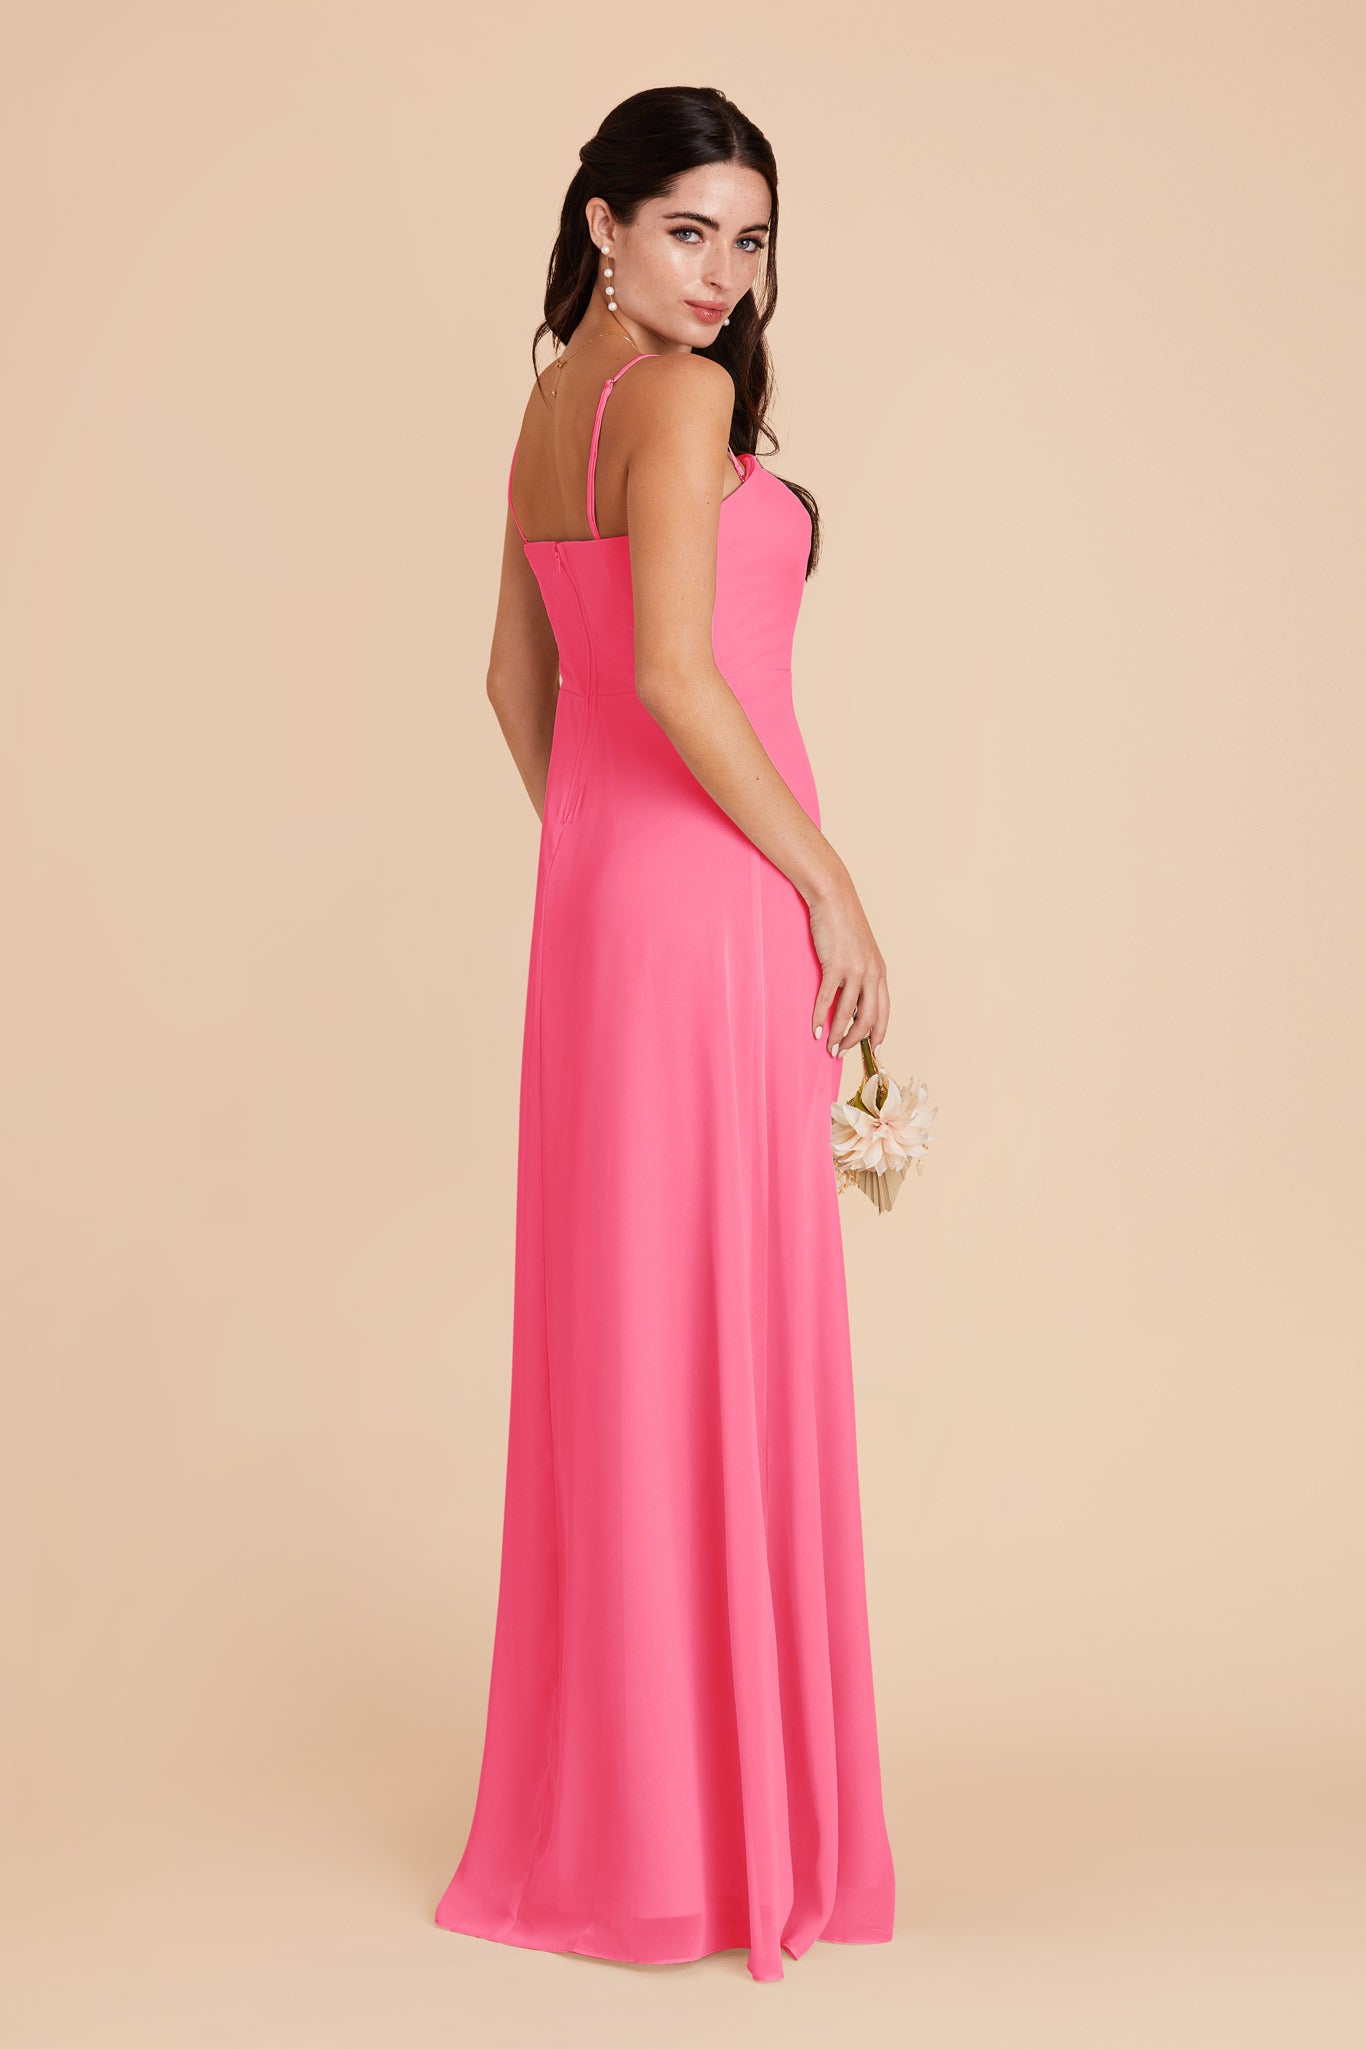 Bon Bon Pink Chris Convertible Chiffon Dress by Birdy Grey